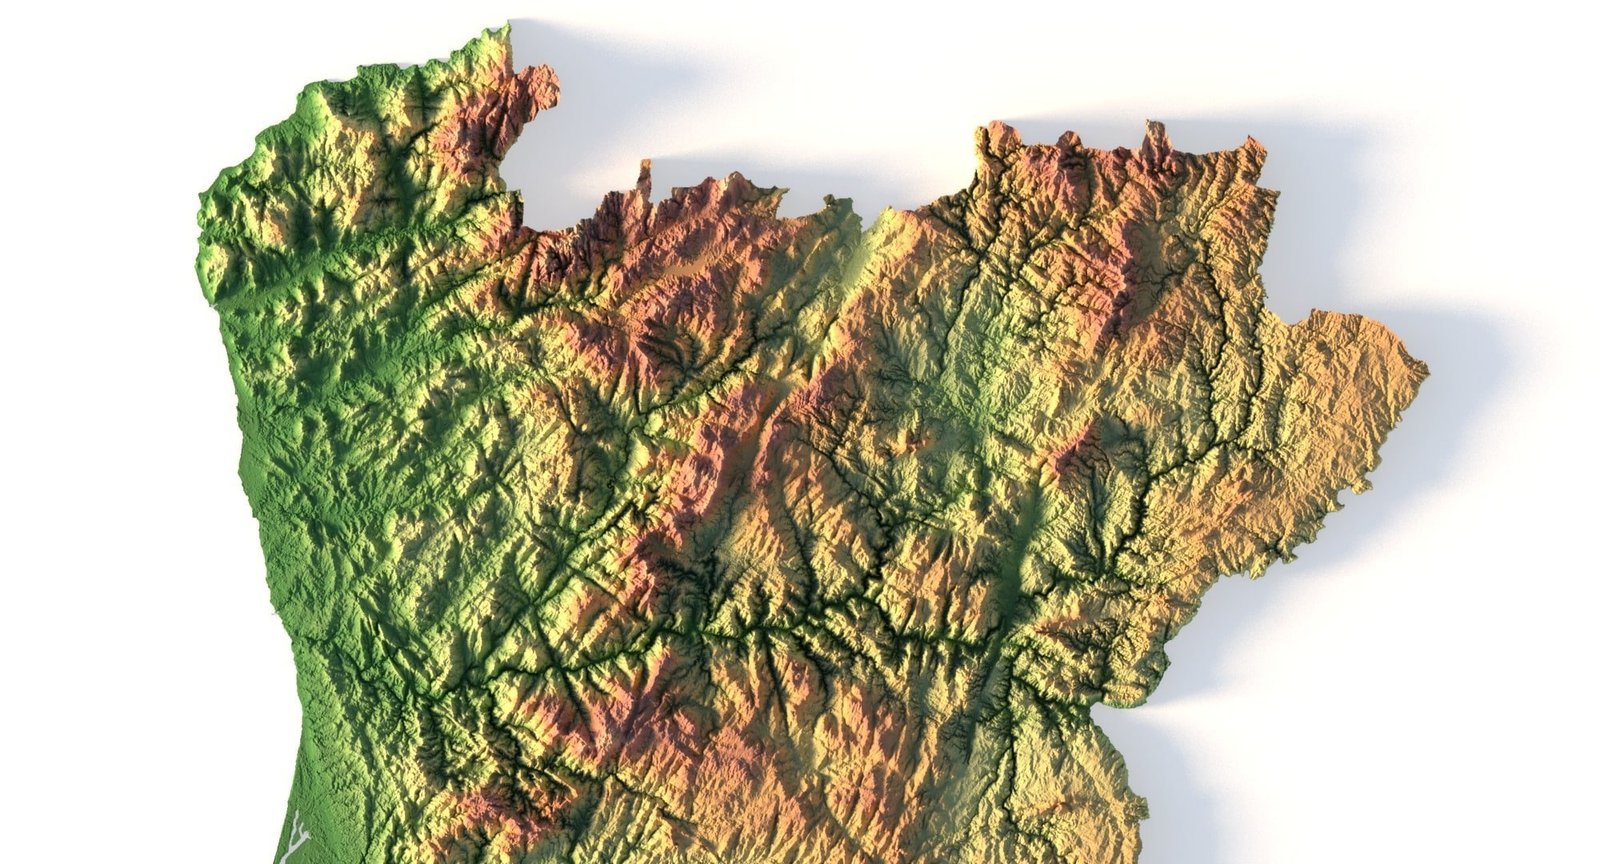 Mapa detalhado do país de Portugal Modelo 3D - TurboSquid 1105198